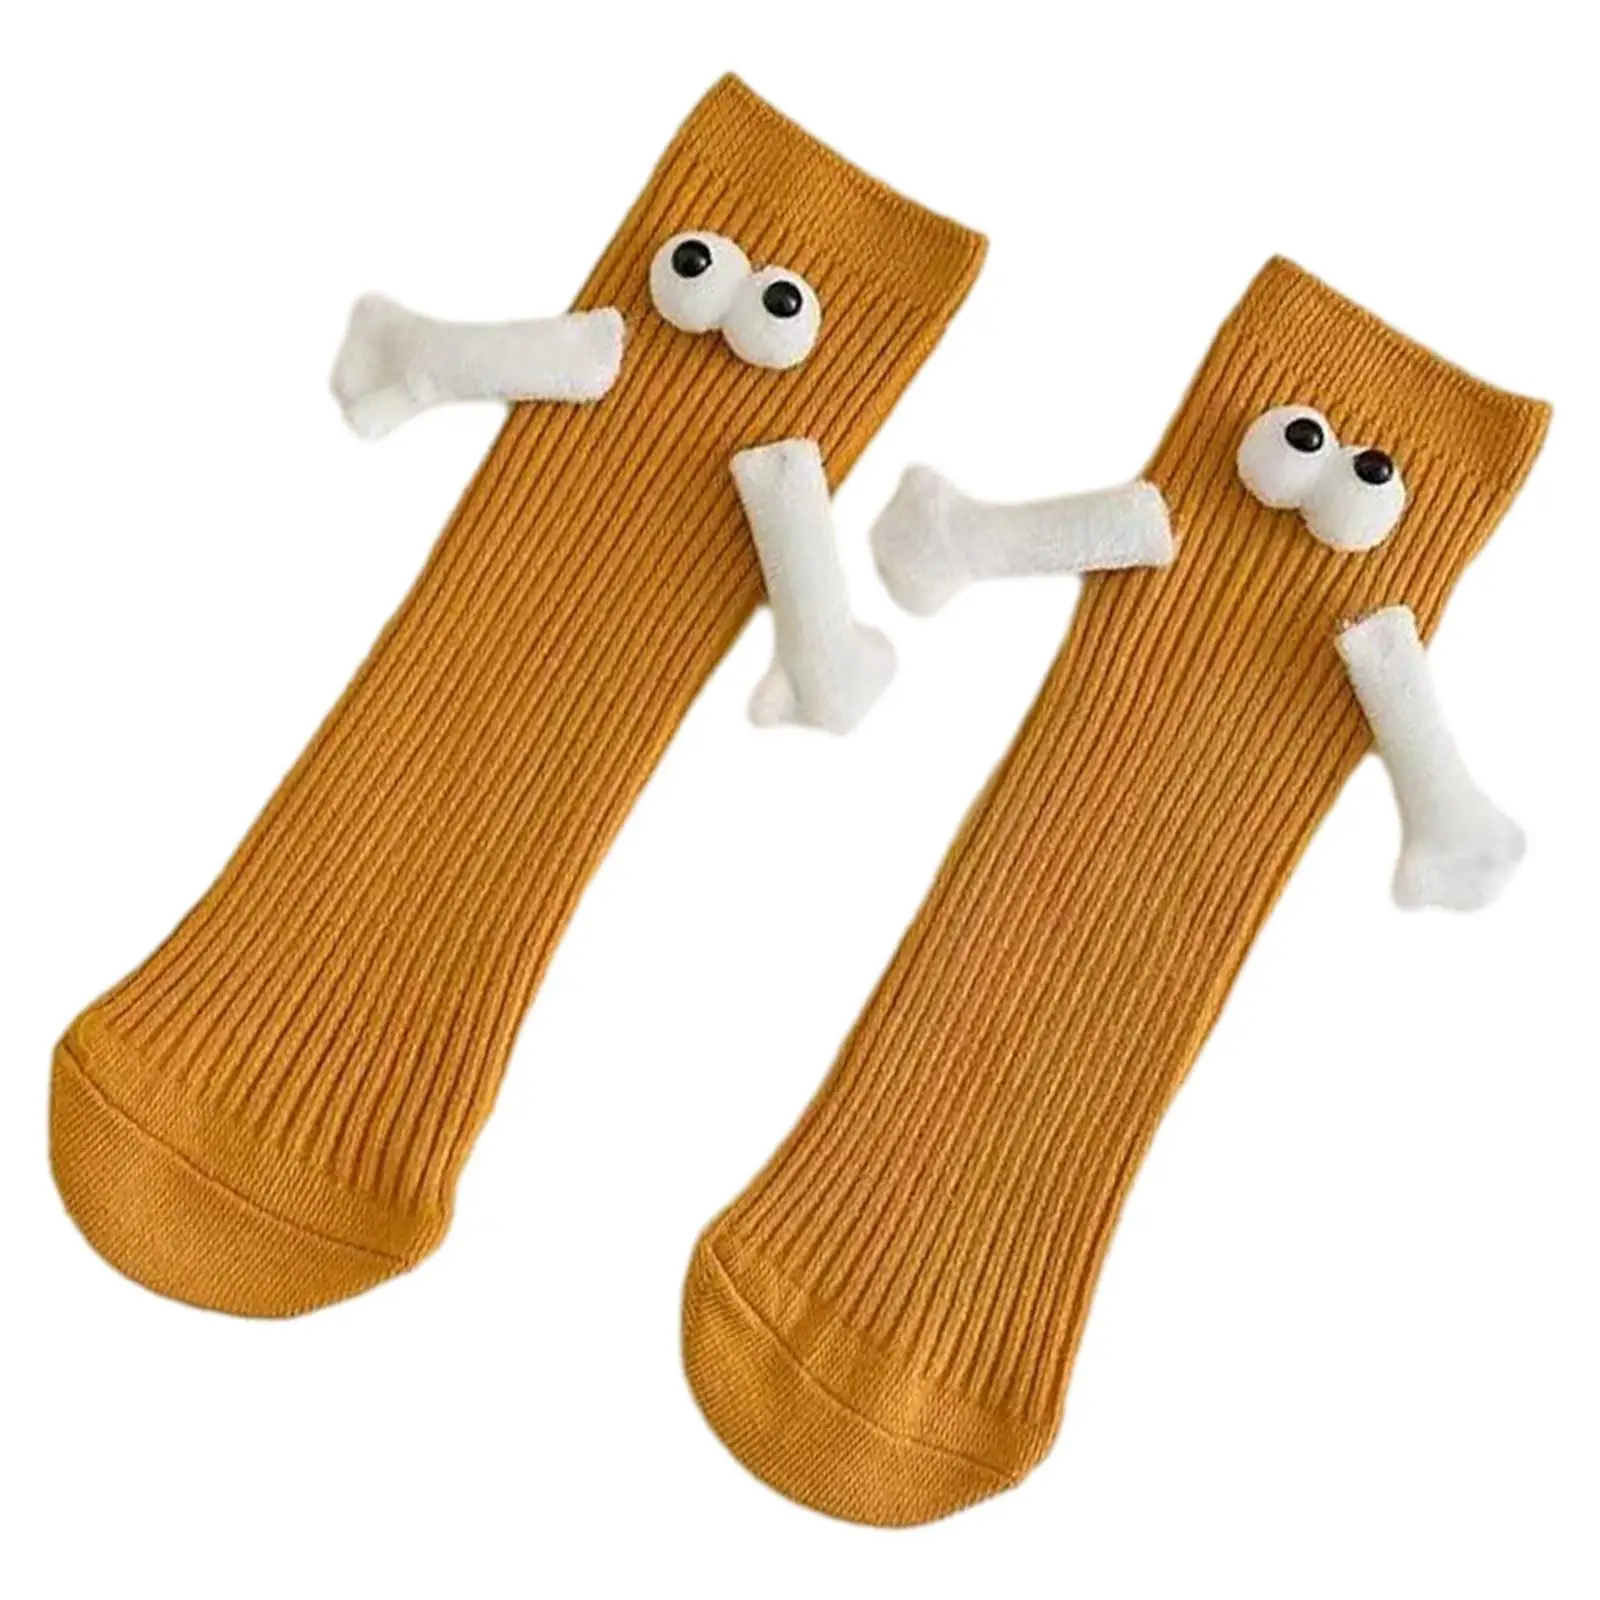 Mid Tube Socks Magnetic Friendship Socks Funny Novelty Socks 1 Pair 3D Doll Eyes Couple Socks for Friends Lovers Sisters